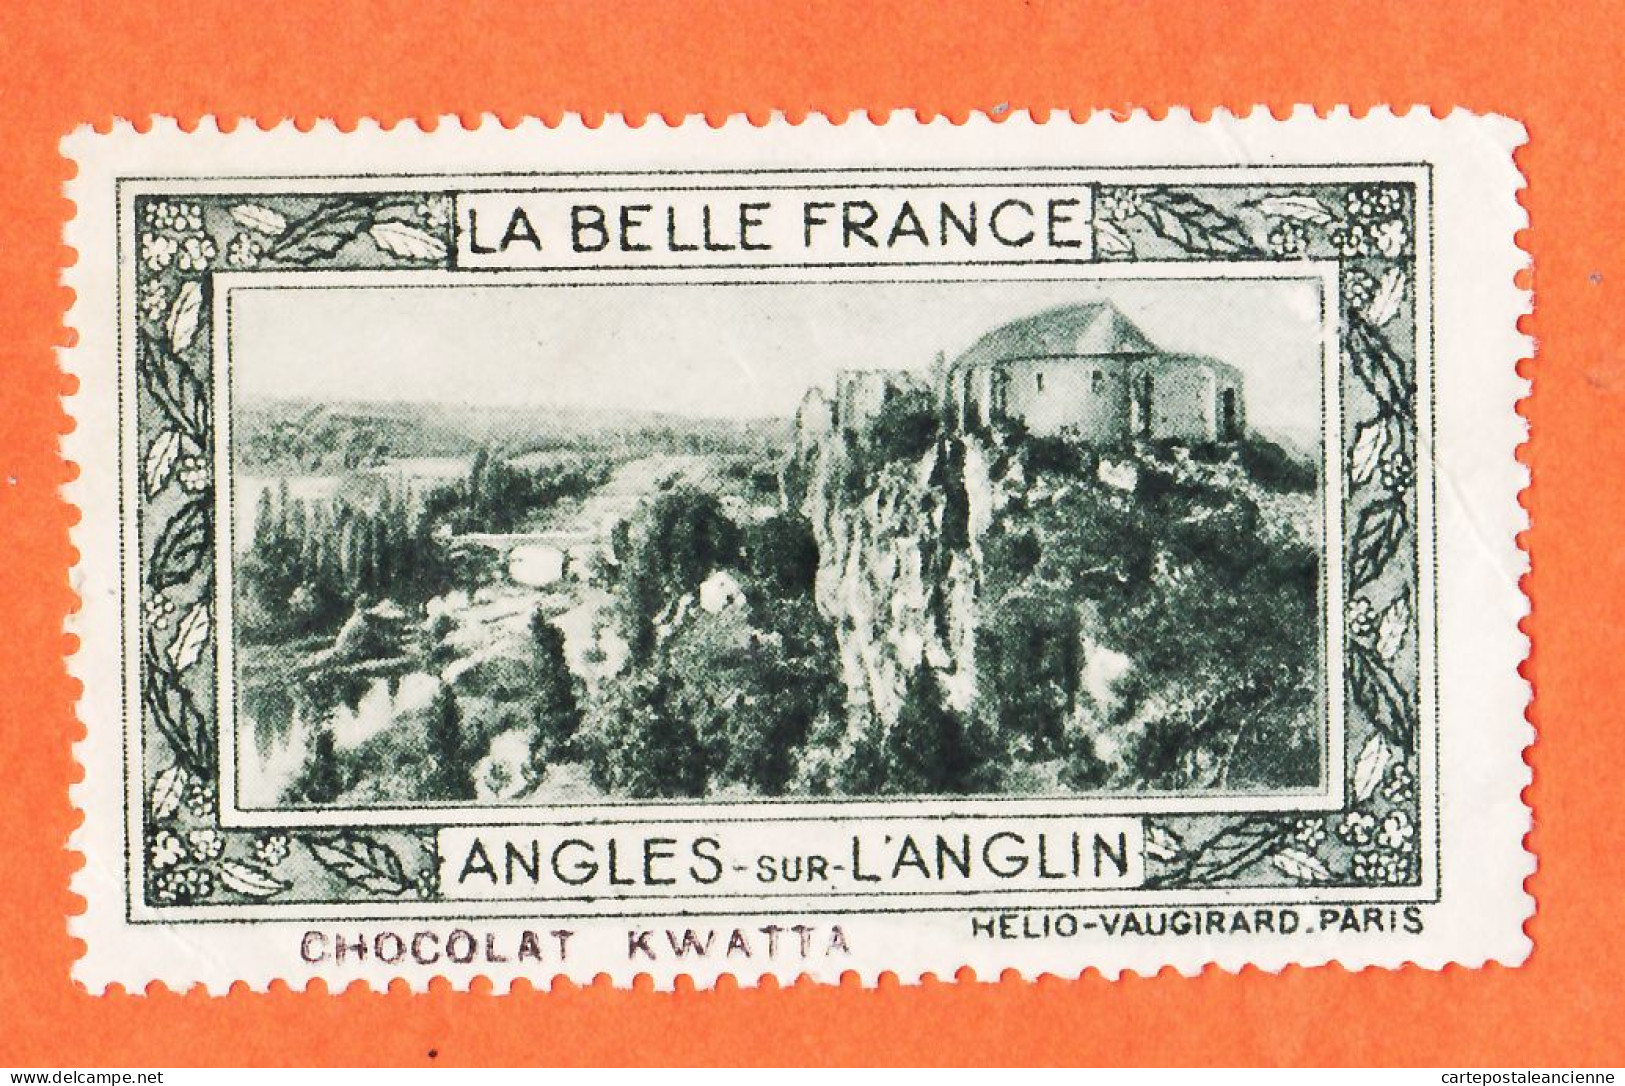 36975 / ⭐ ◉ LANGLES-sur-L'ANGLIN 86-Yonne Pub Chocolat KWATTA Vignette Collection BELLE FRANCE HELIO-VAUGIRARD - Tourism (Labels)